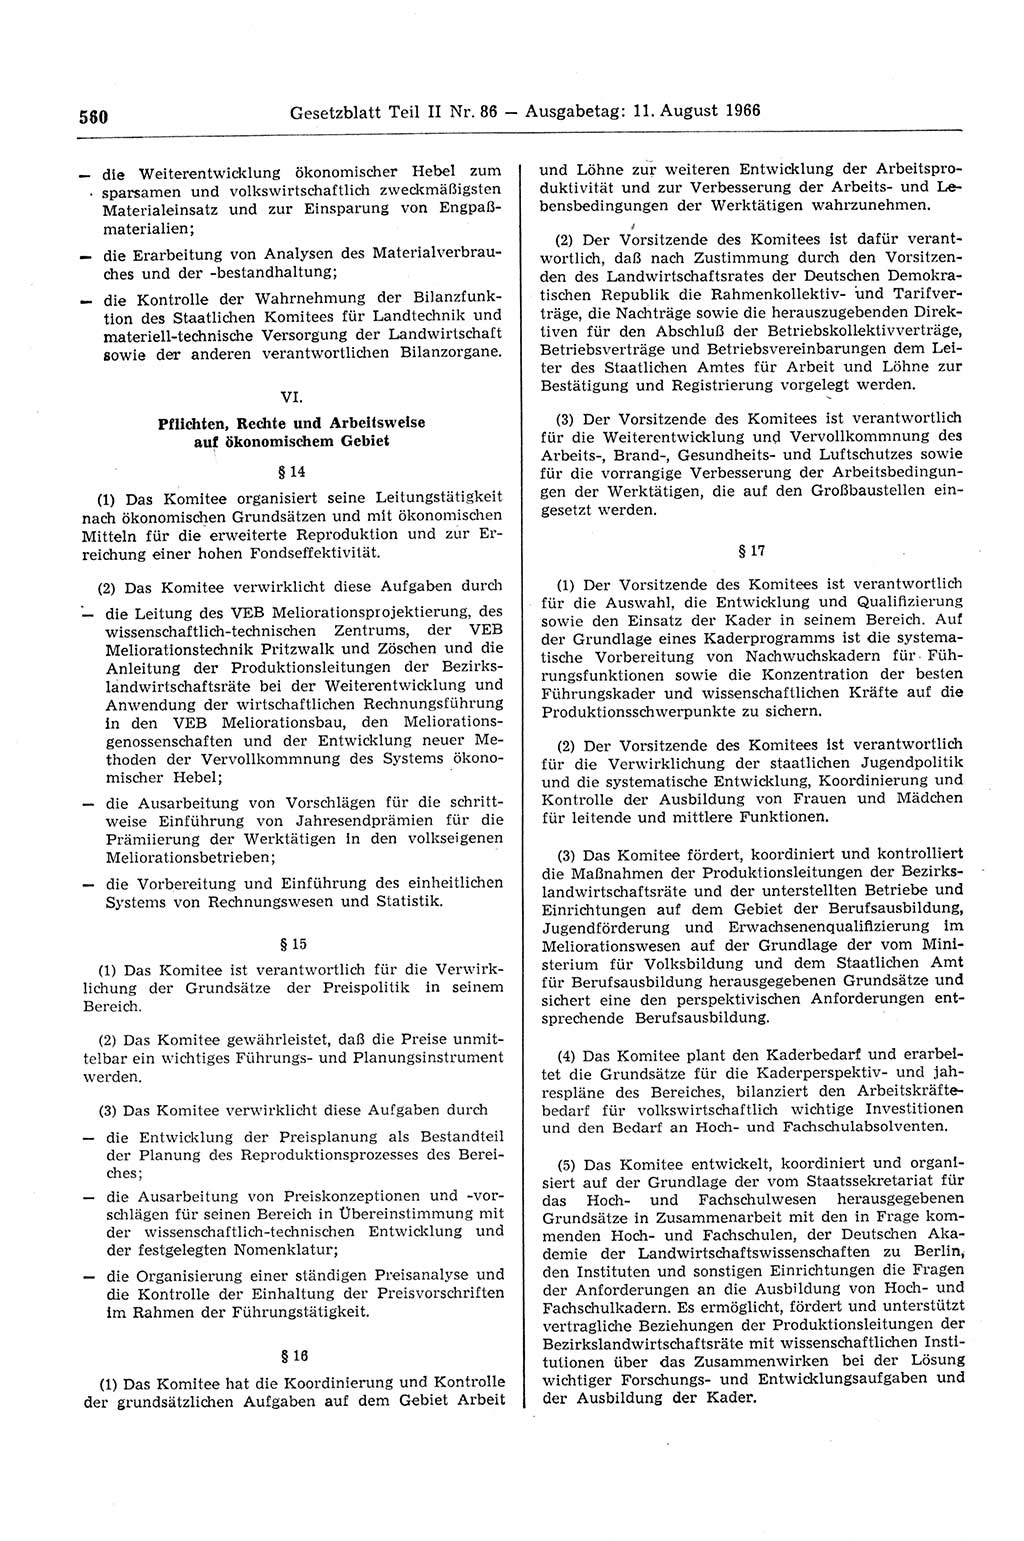 Gesetzblatt (GBl.) der Deutschen Demokratischen Republik (DDR) Teil ⅠⅠ 1966, Seite 560 (GBl. DDR ⅠⅠ 1966, S. 560)